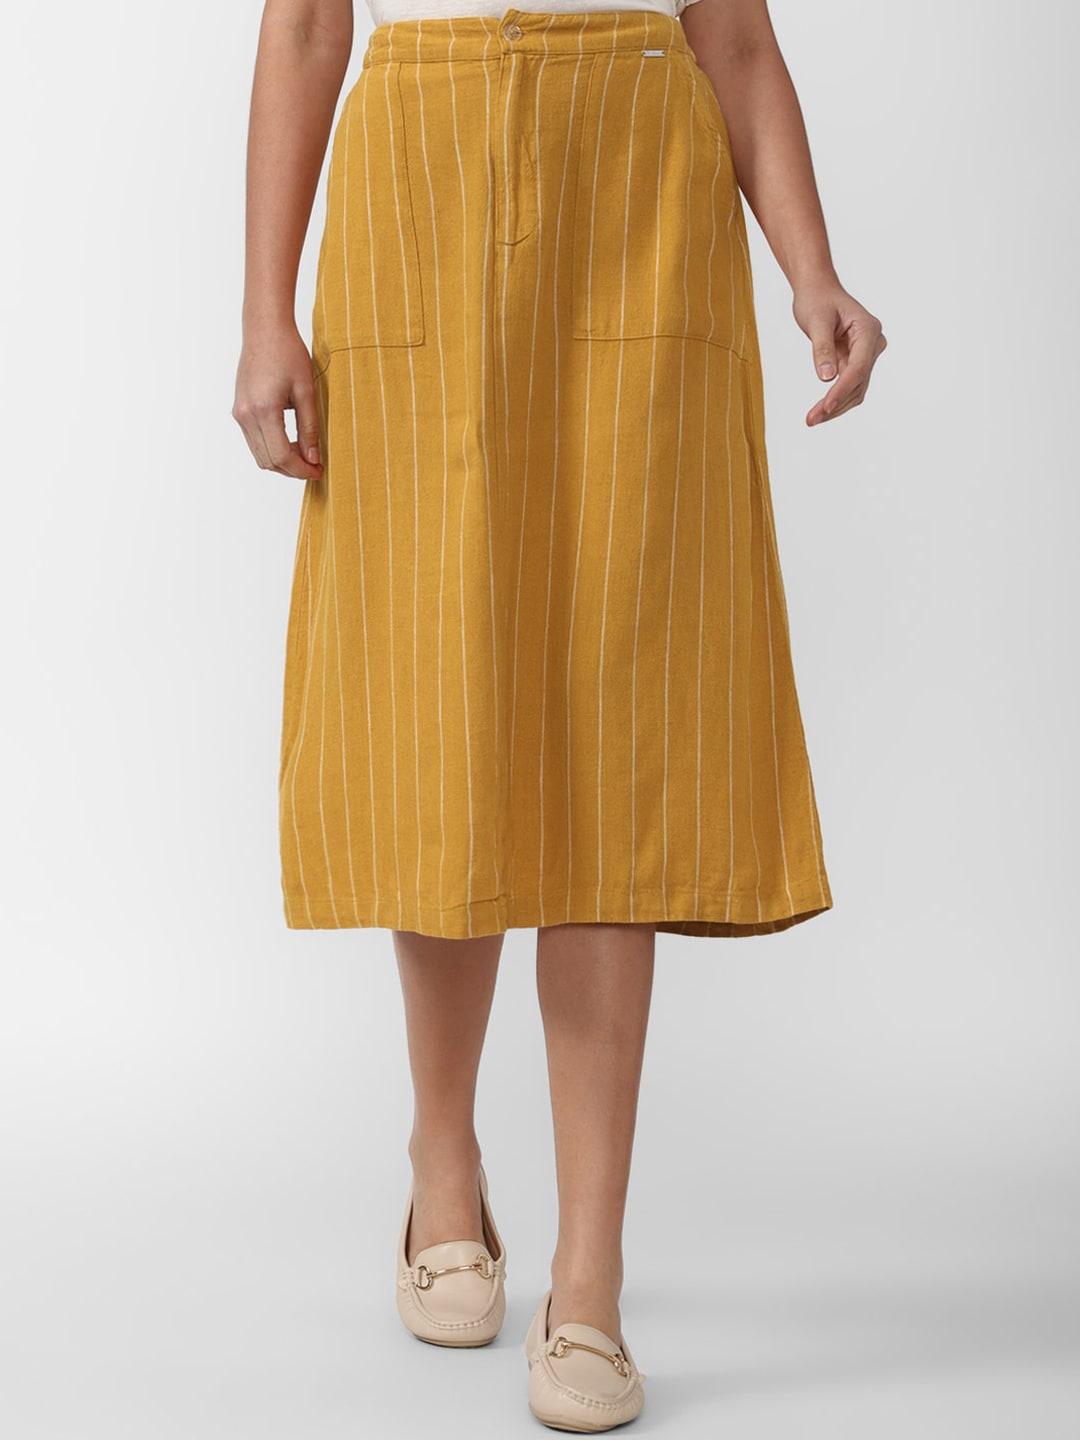 van heusen woman yellow & white striped a-line midi skirt